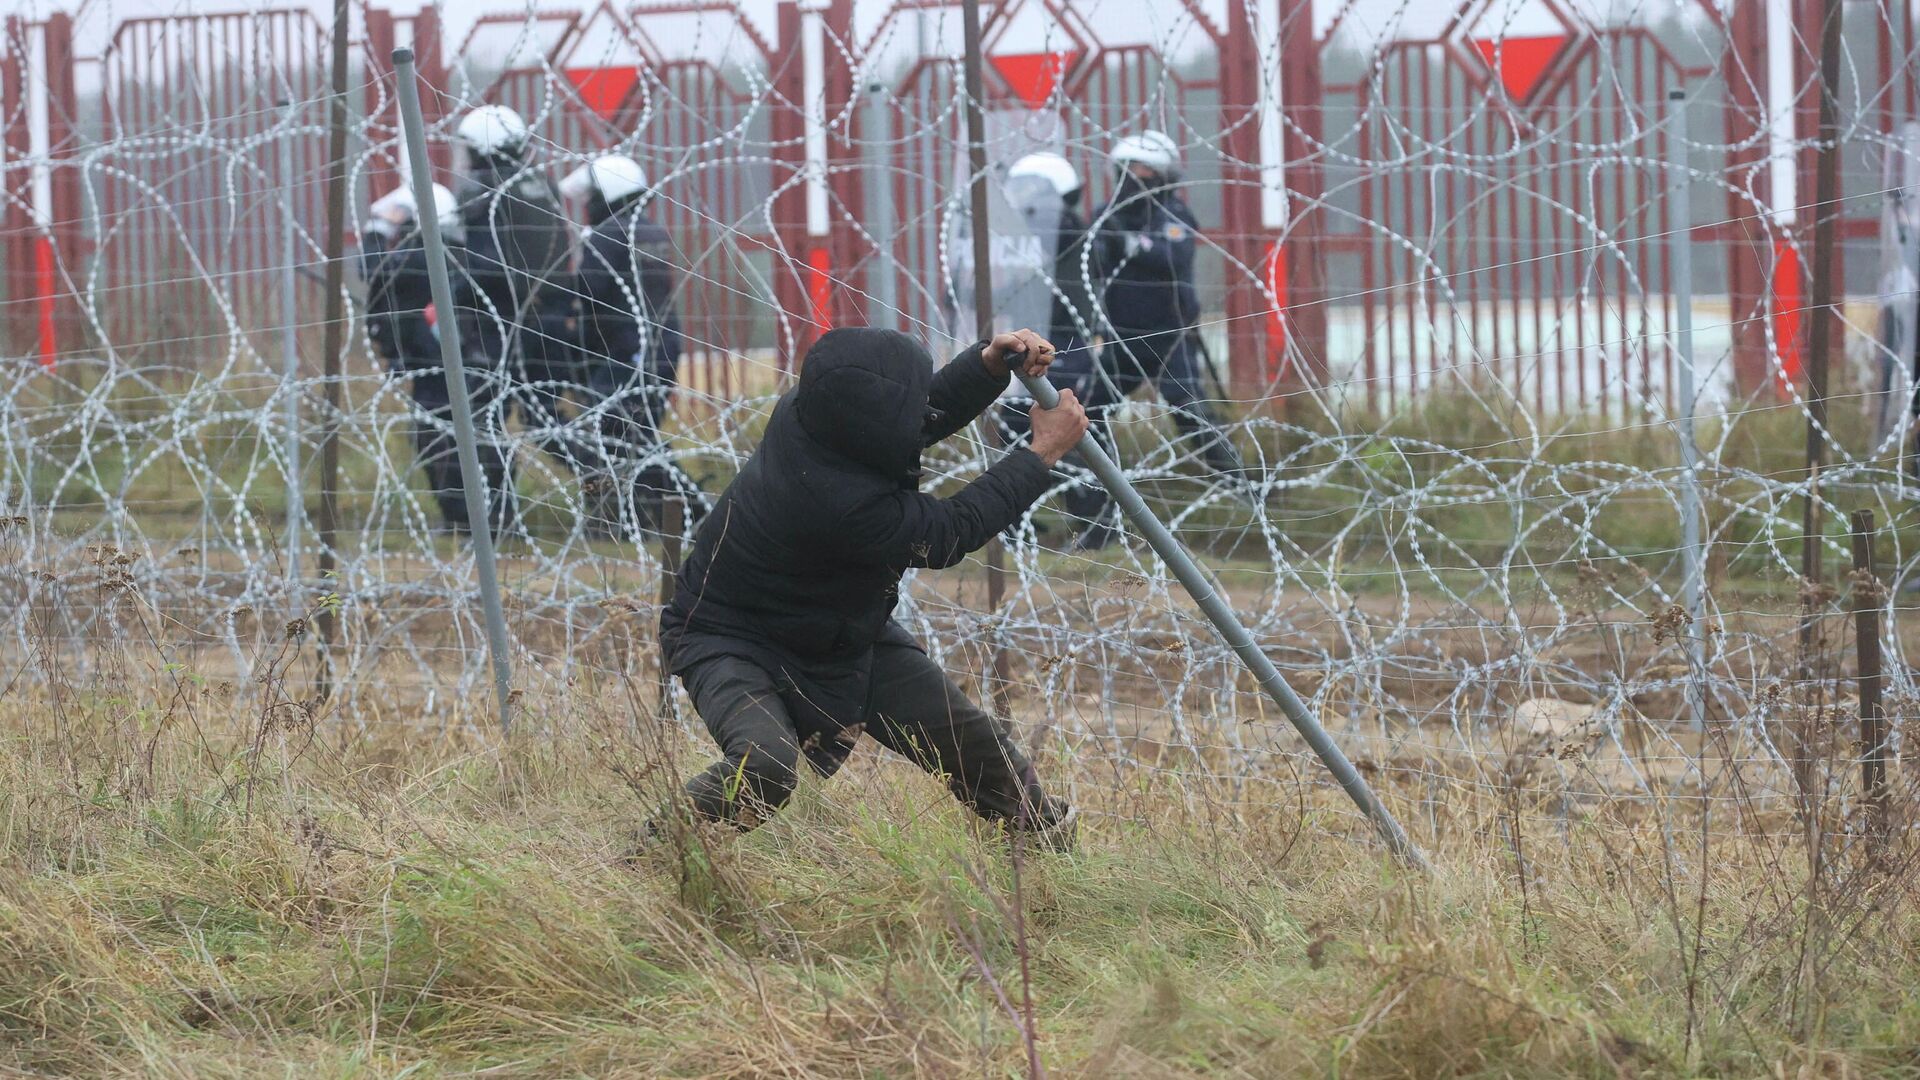 Мужчина ломает забор на белорусско-польской границе в районе КПП Брузги - Кузница  - РИА Новости, 1920, 16.11.2021